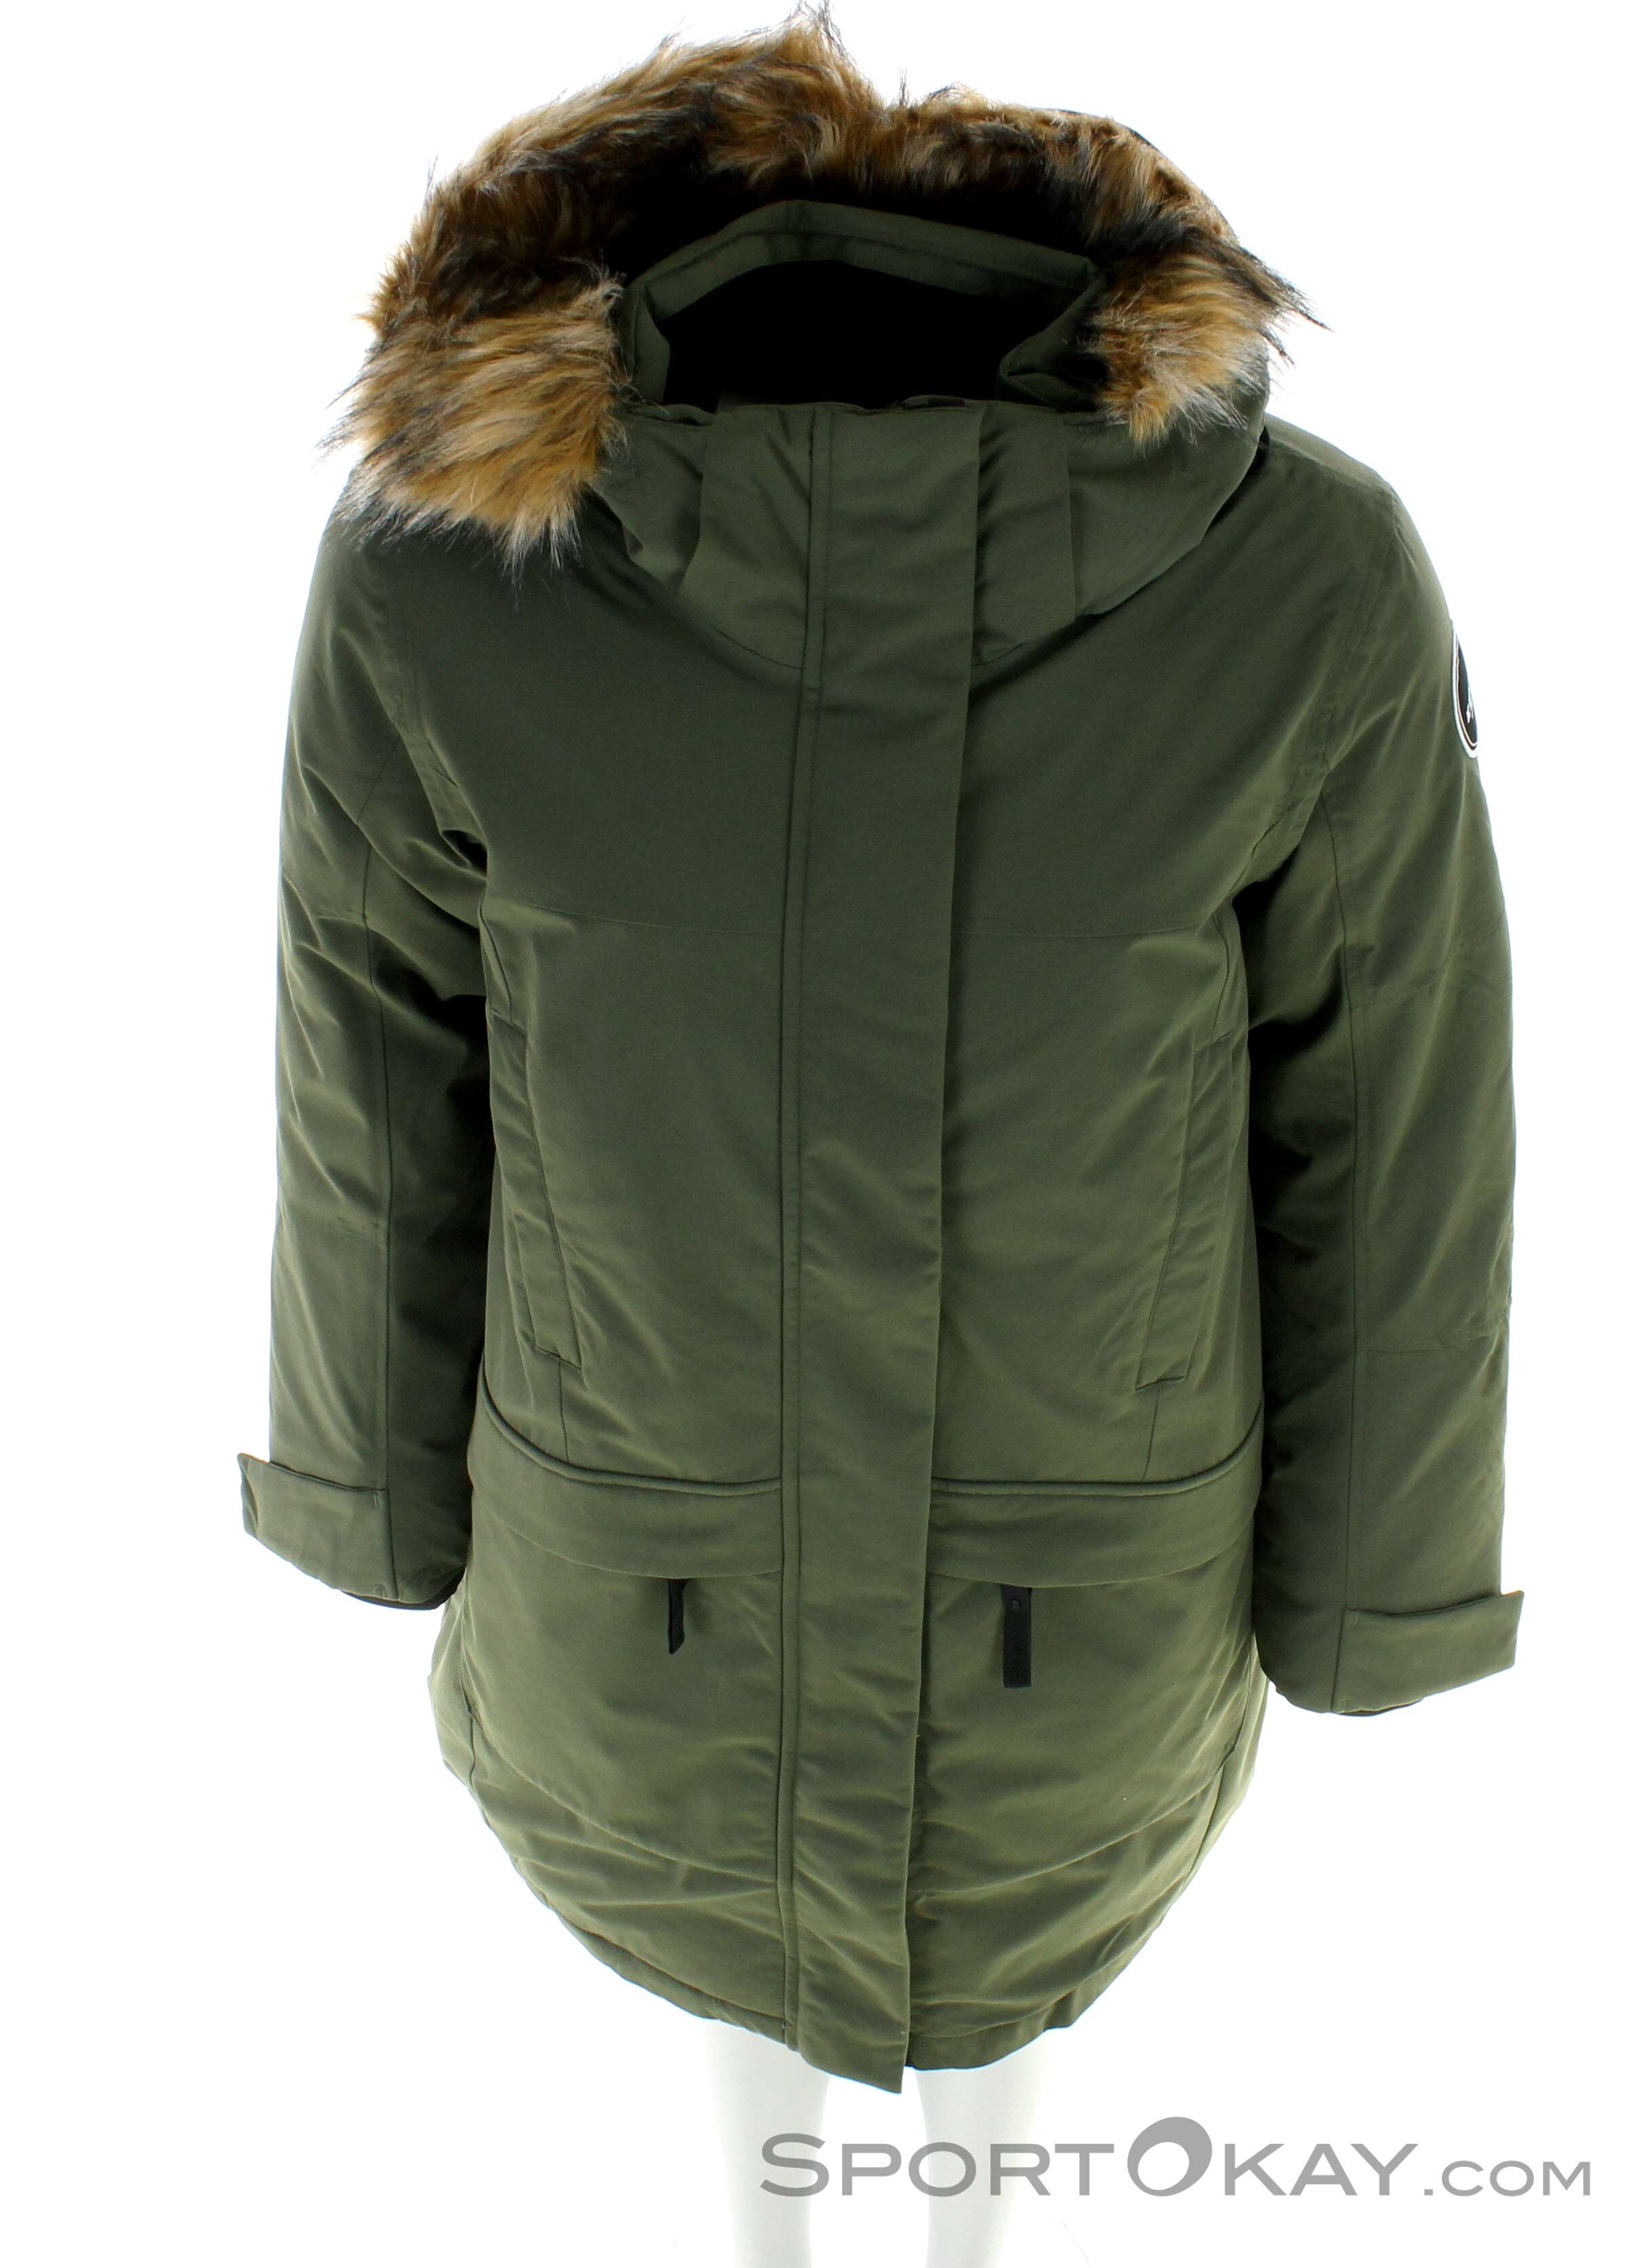 Arneburg Jackets Clothing - Fashion Coat - All Leisure Icepeak - - Women